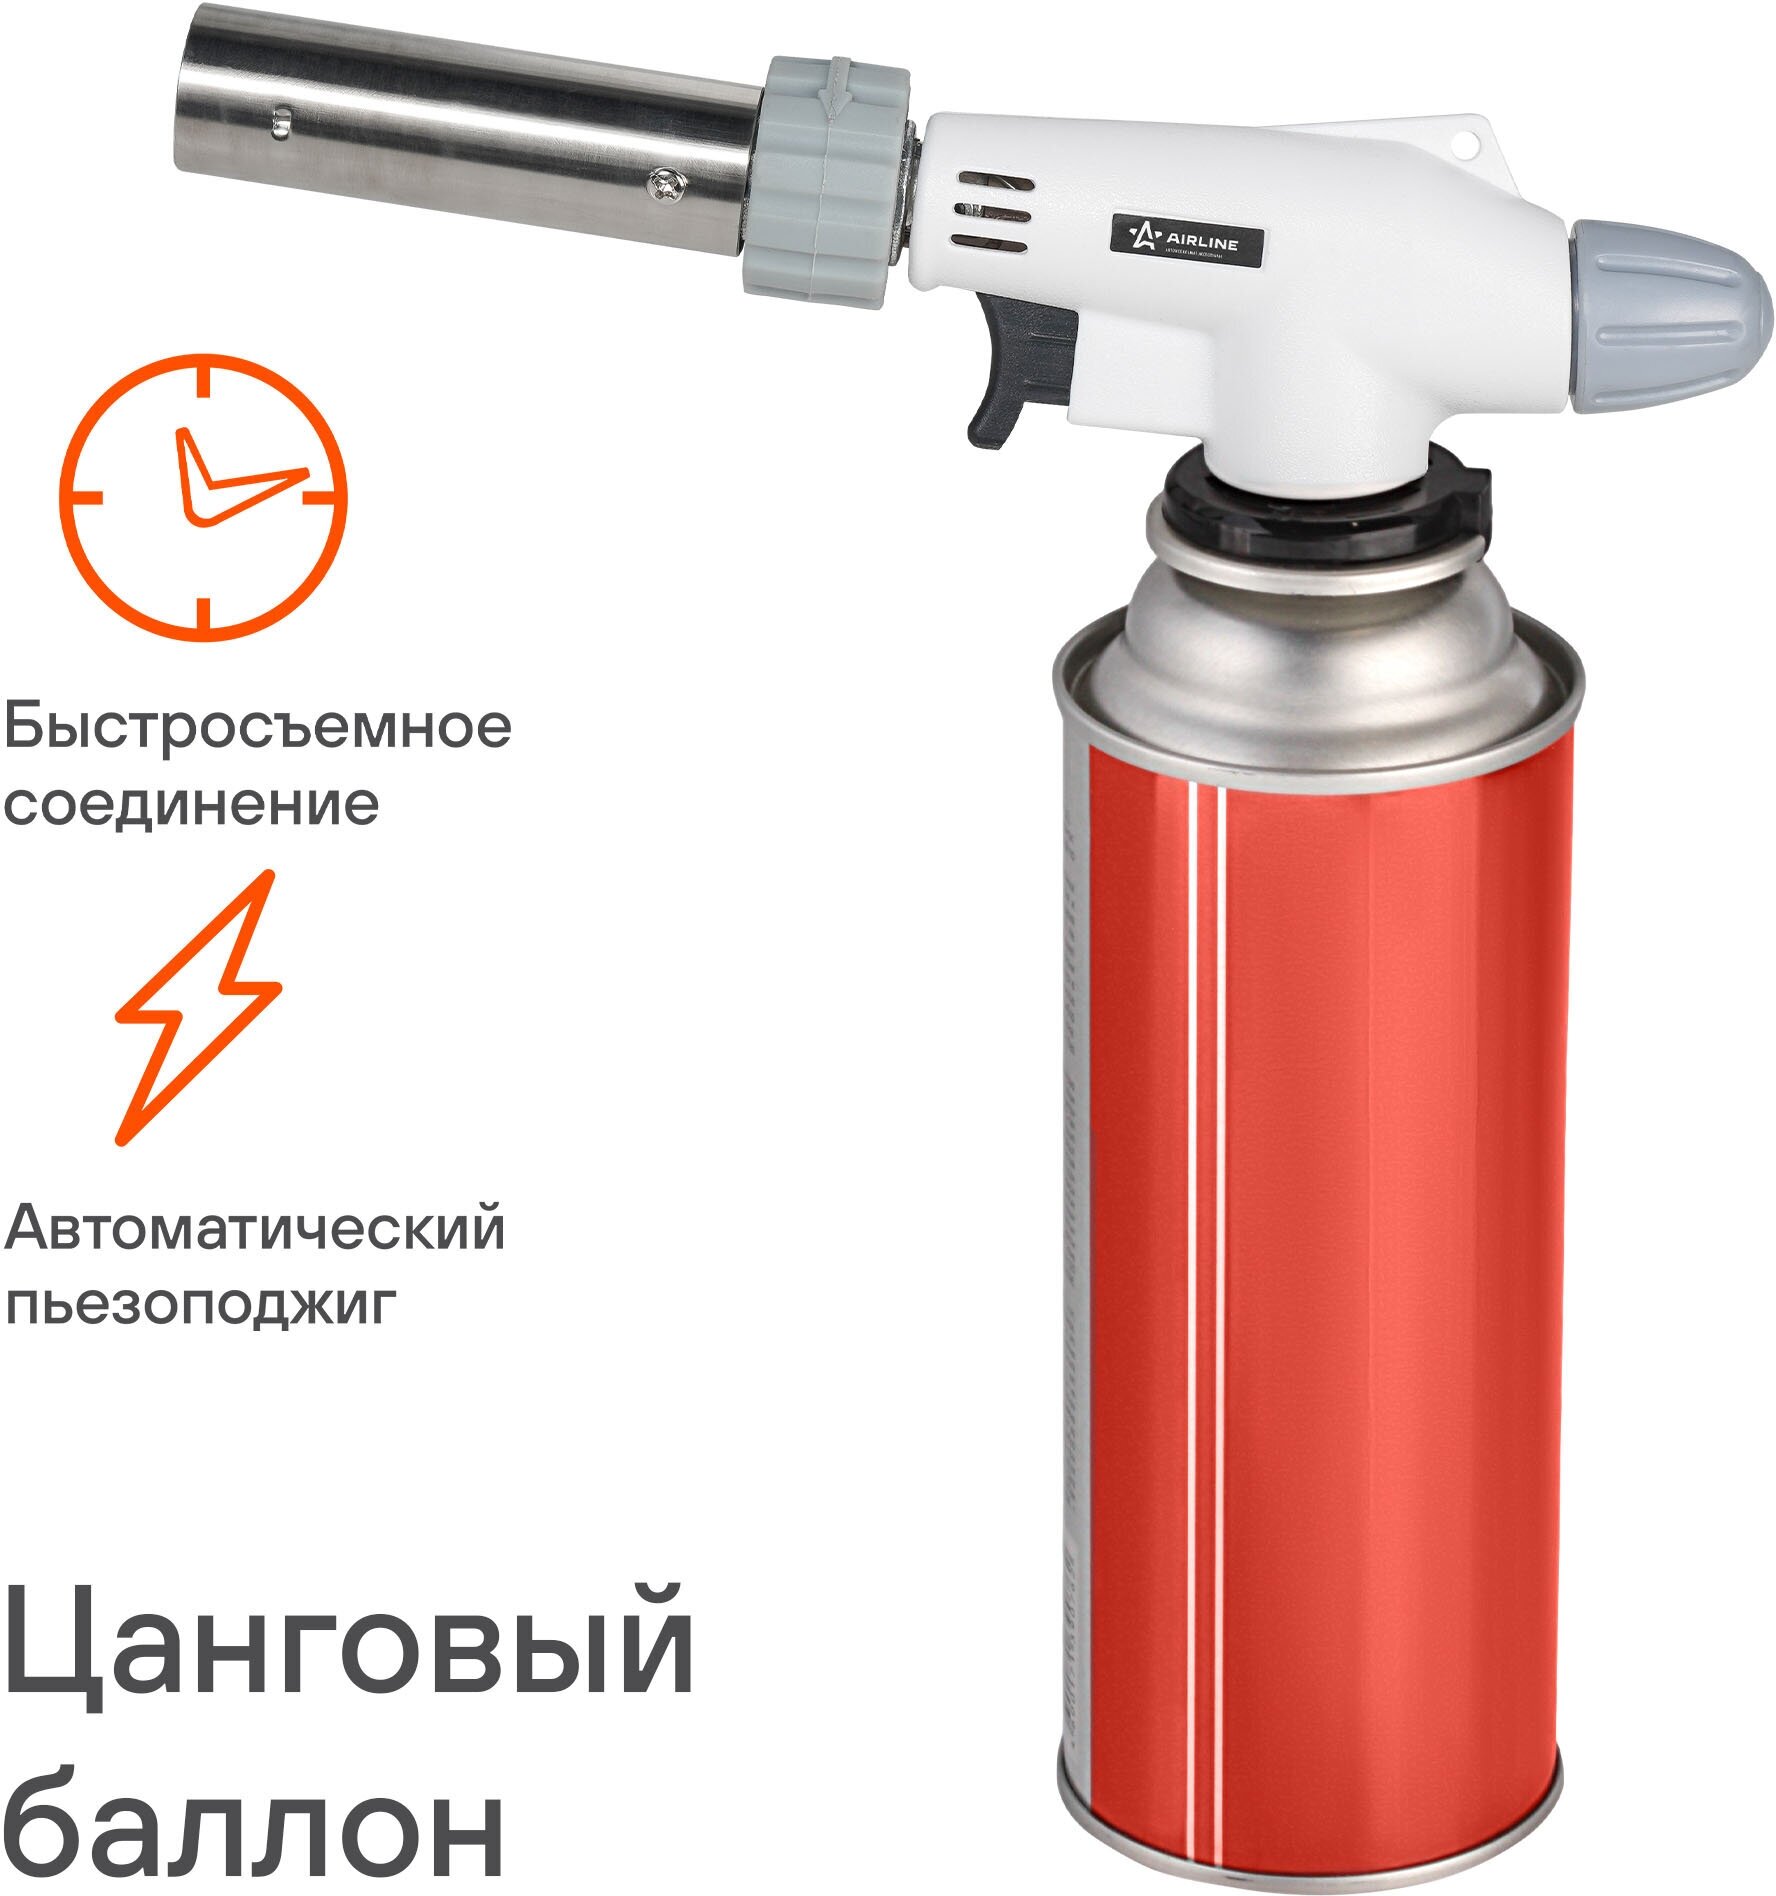 Горелка газовая С пьезоподжигом на цанговый баллон, анти-вспышка, регулятор воздуха, 20x6x4 СМ (AGT-03)